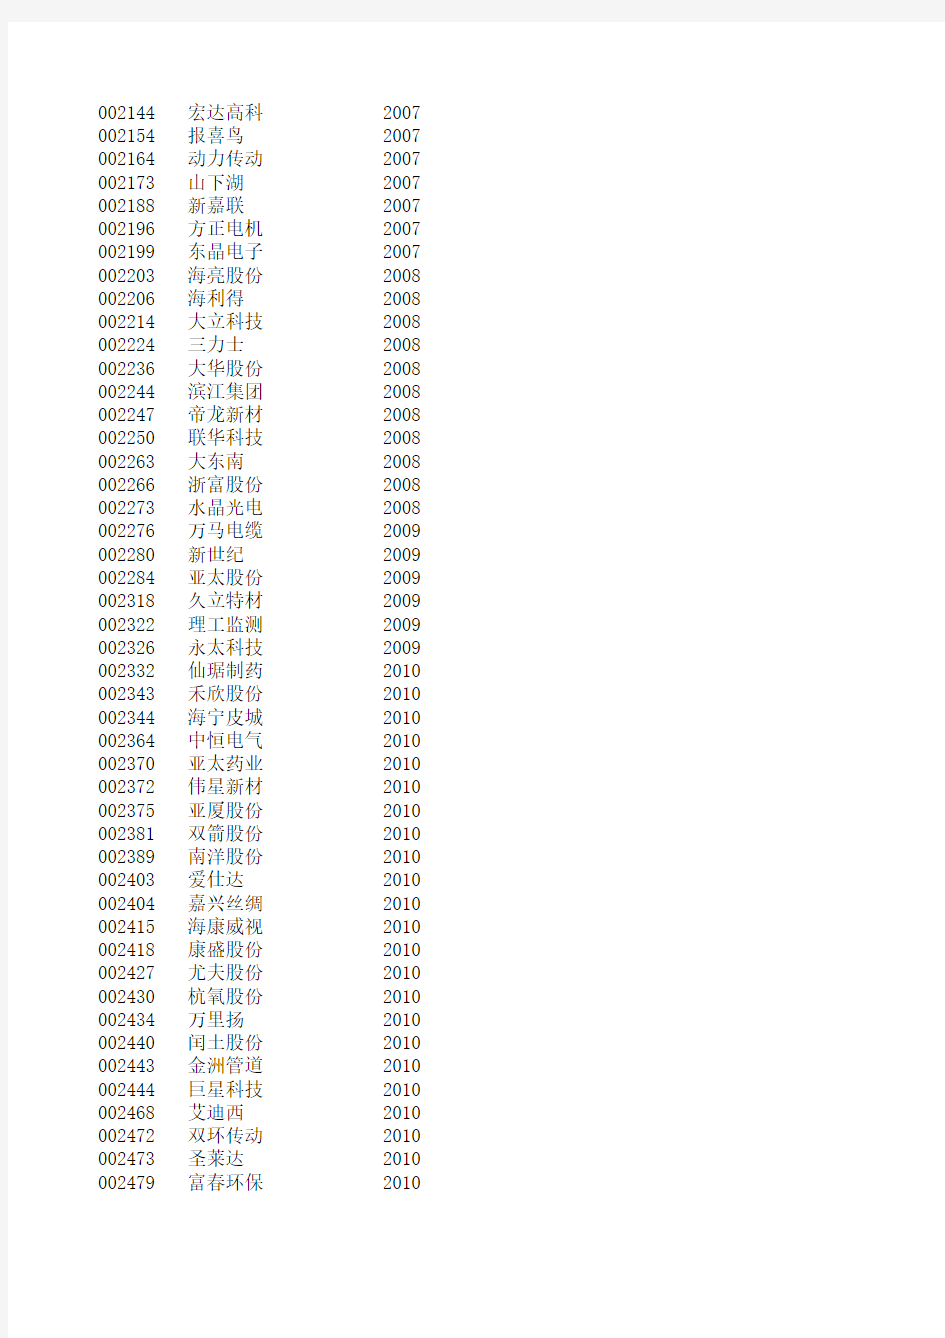 2011浙江省所有上市公司名单